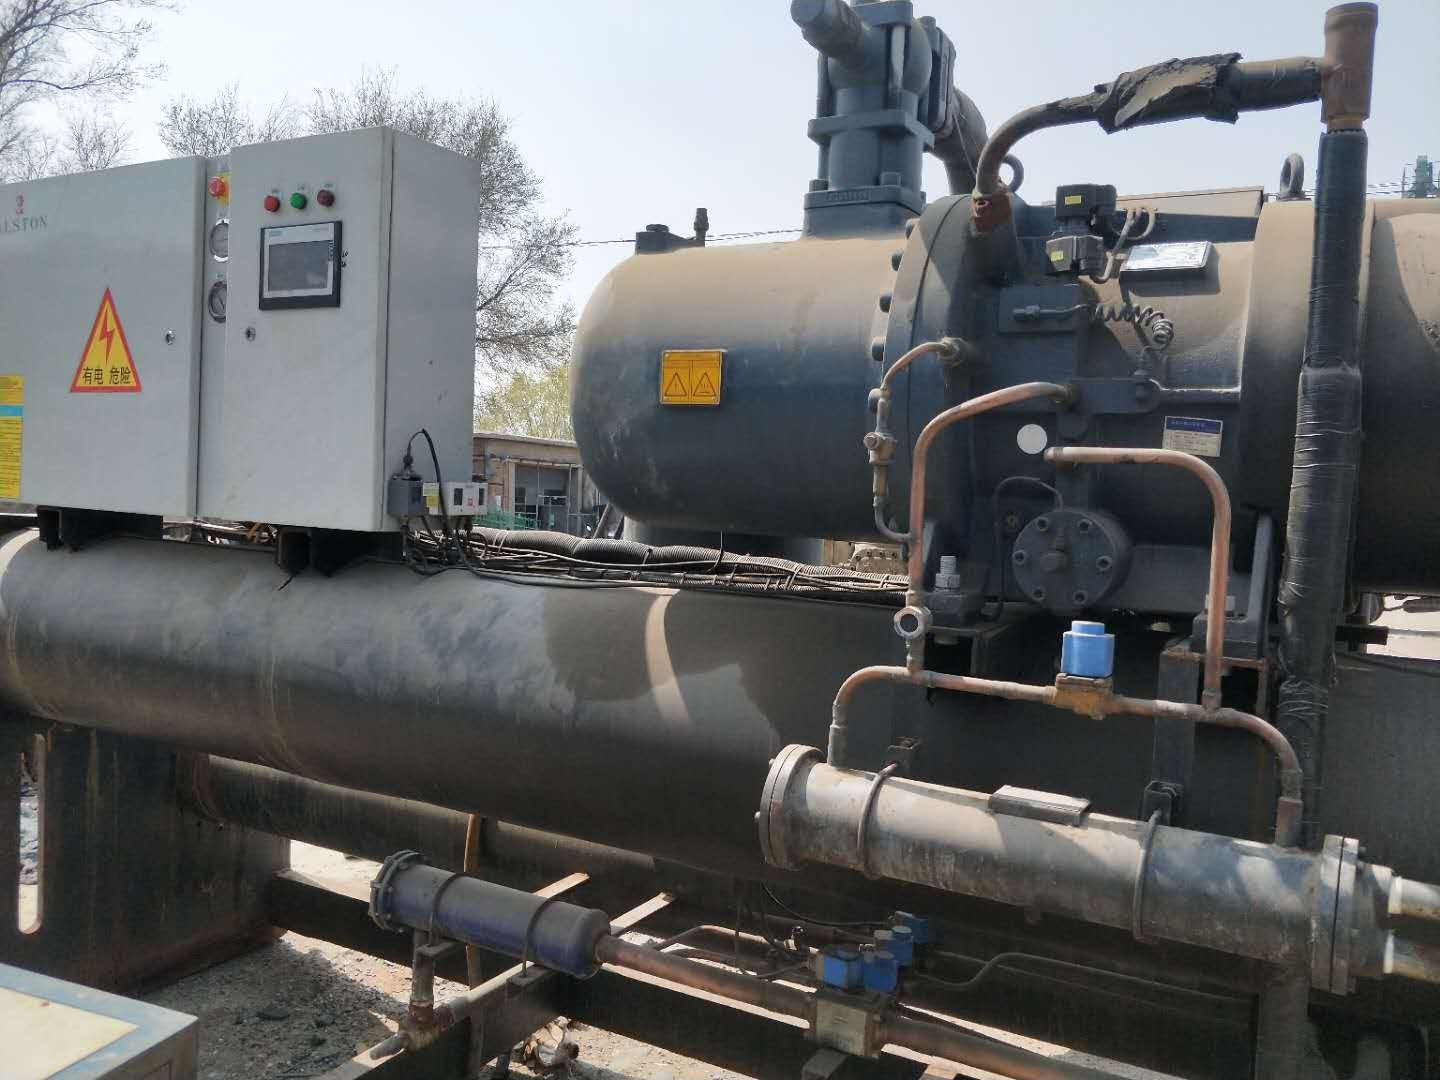 阳江市二手空调回收/溴化锂制冷机回收闲置空调回收